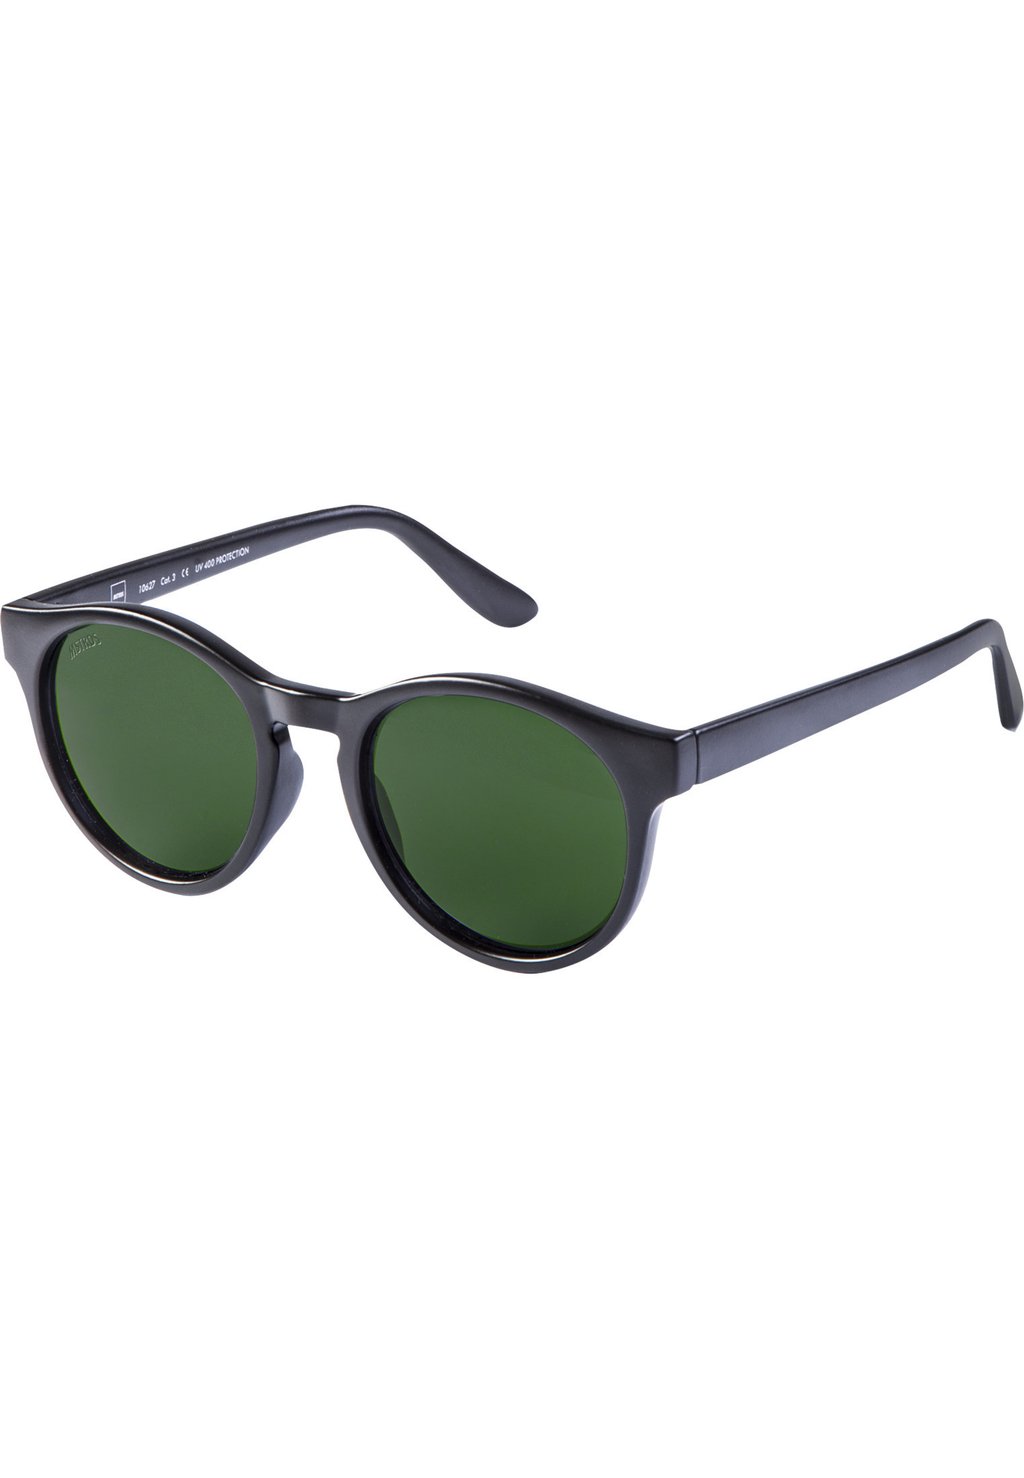 Солнцезащитные очки Sunrise MSTRDS, цвет blk grn